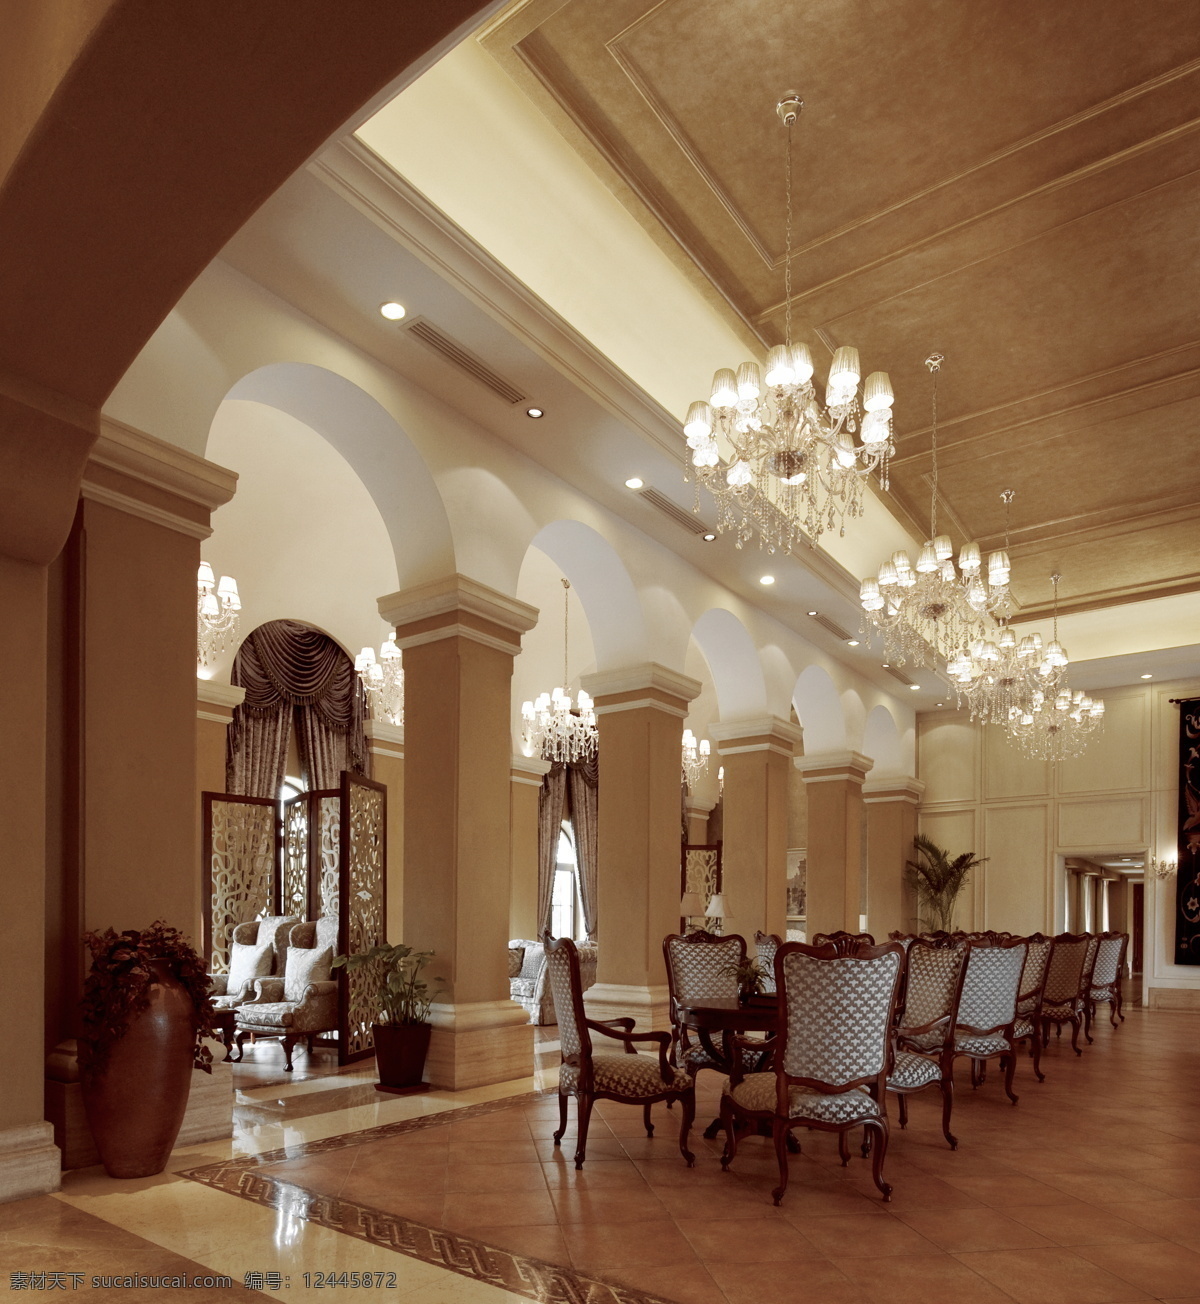 灯光 古典 贵族 简欧 建筑园林 室内摄影 欧式 风格 古典欧式风格 意大利风格 家居装饰素材